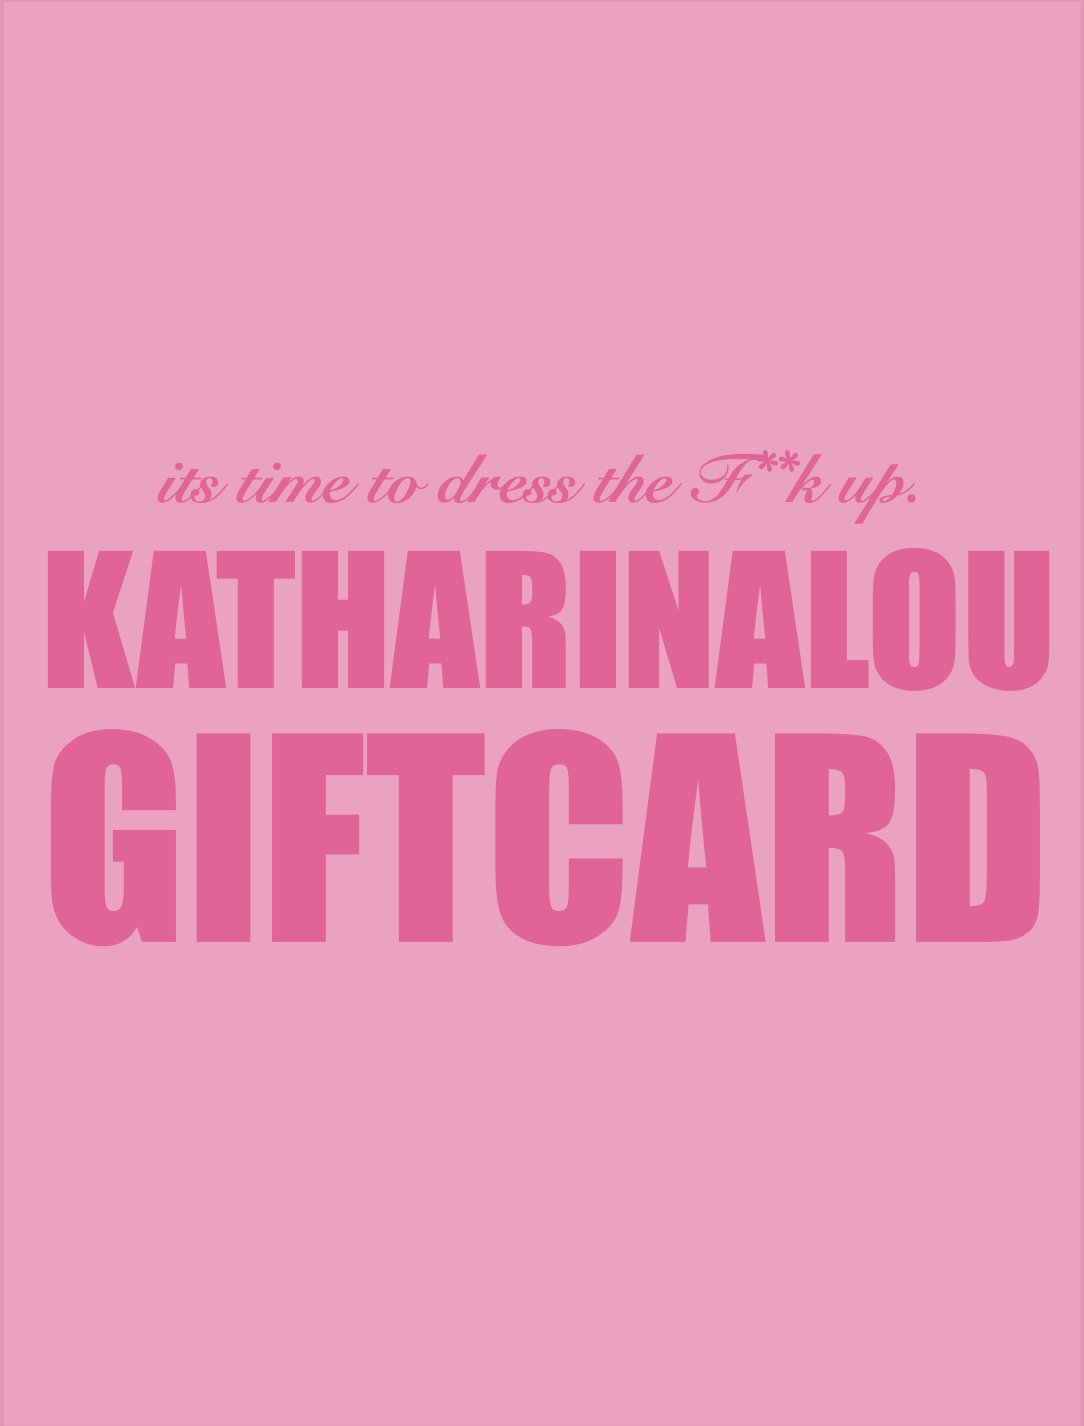 KATHARINA LOU GIFT CARD